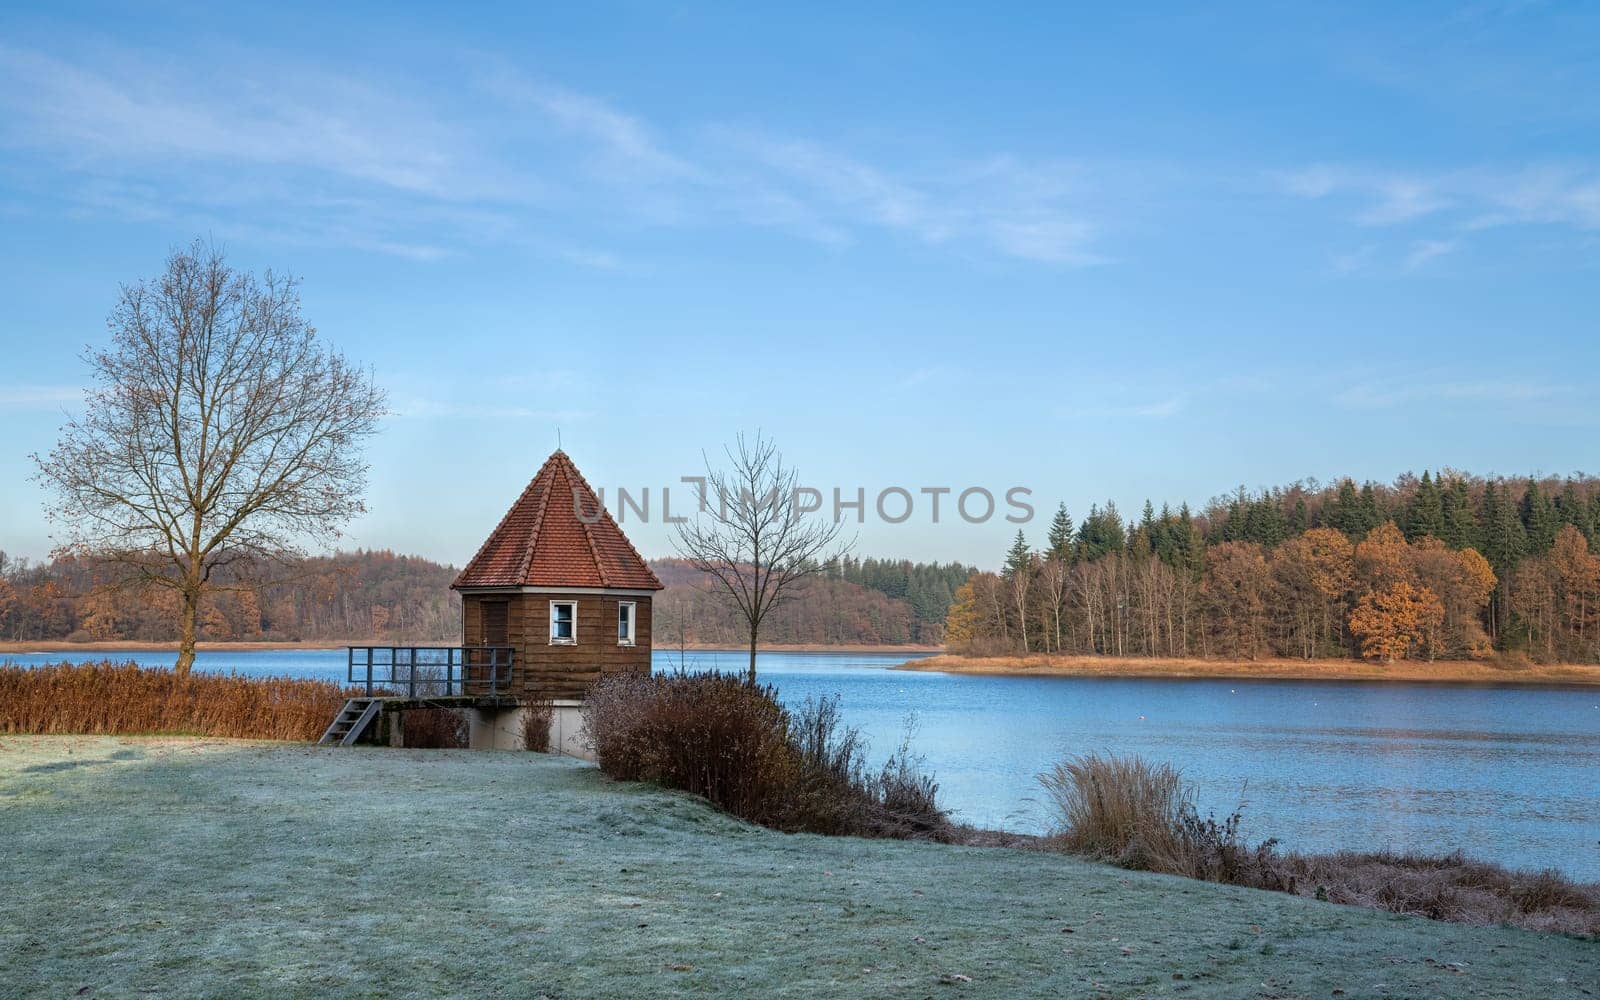 Kerspe lake, Bergisches Land, Germany by alfotokunst